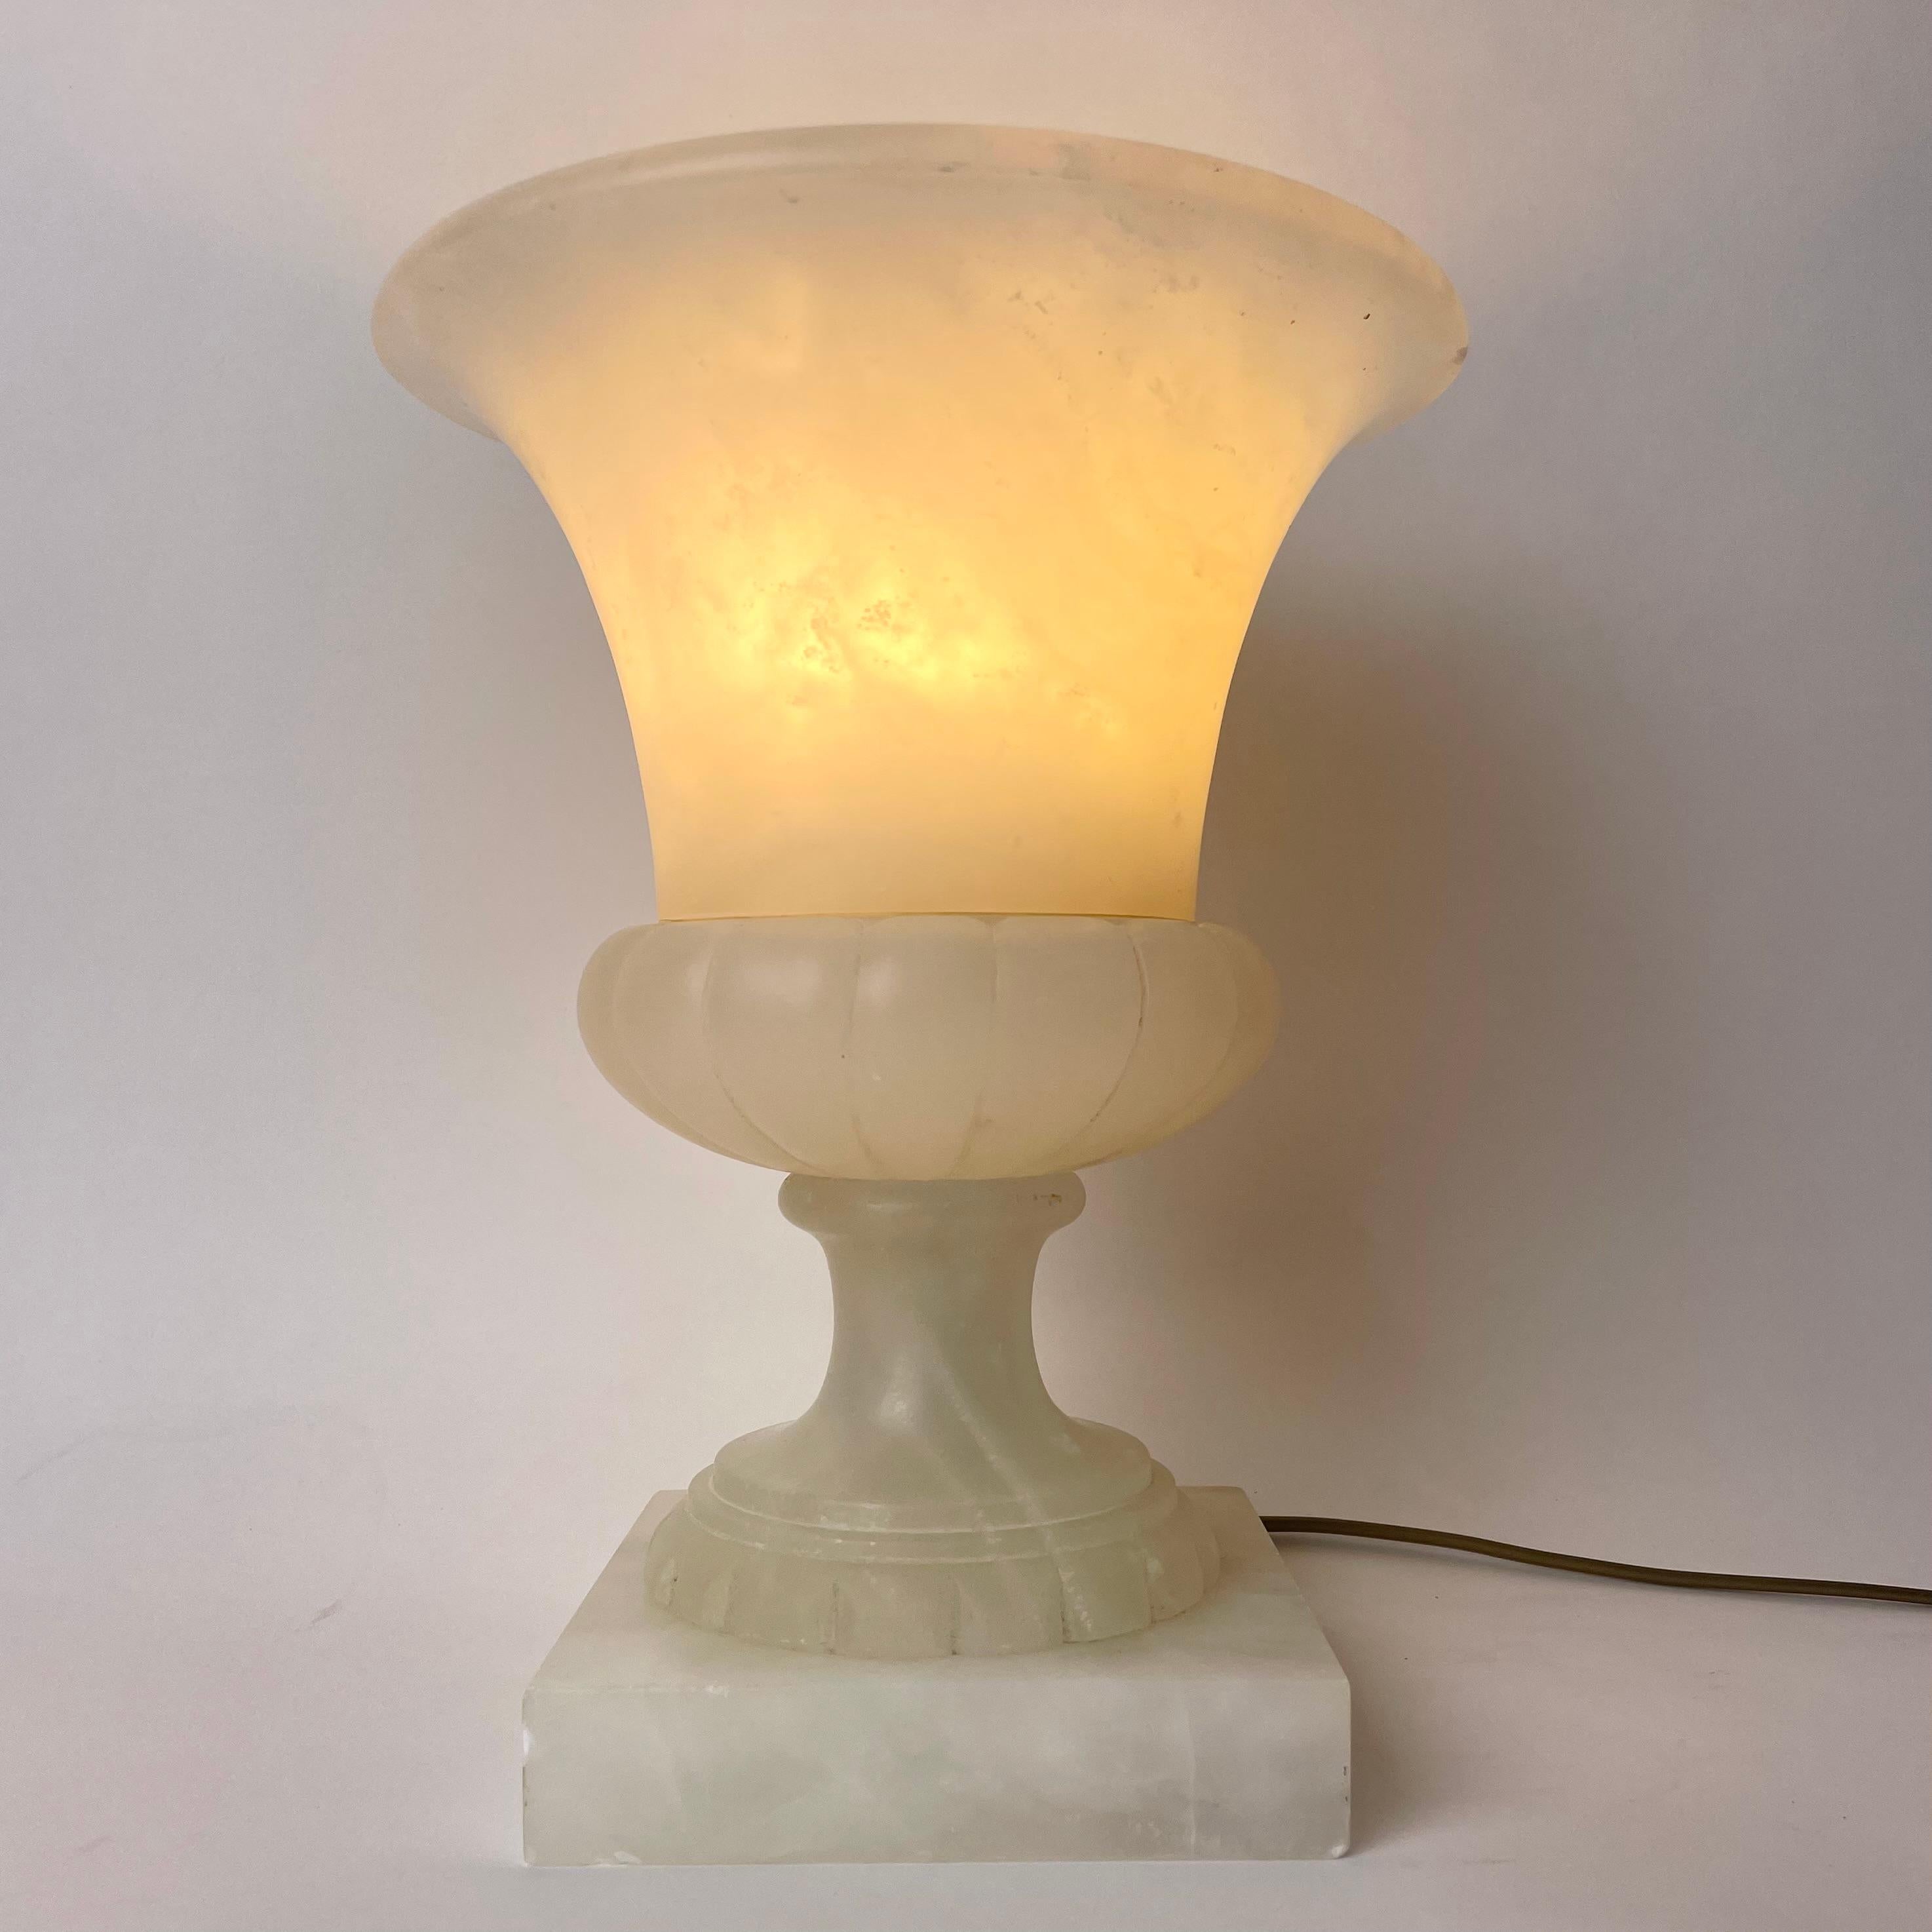 Elegante urnenförmige Tischlampe aus Alabaster, wahrscheinlich aus dem frühen 20. Jahrhundert. Sehr warmes und gemütliches Licht. 

Auf der Rückseite der Lampe befinden sich kleinere Punkte als zuvor für warme Lampen. (Siehe Bilder)

Abnutzung